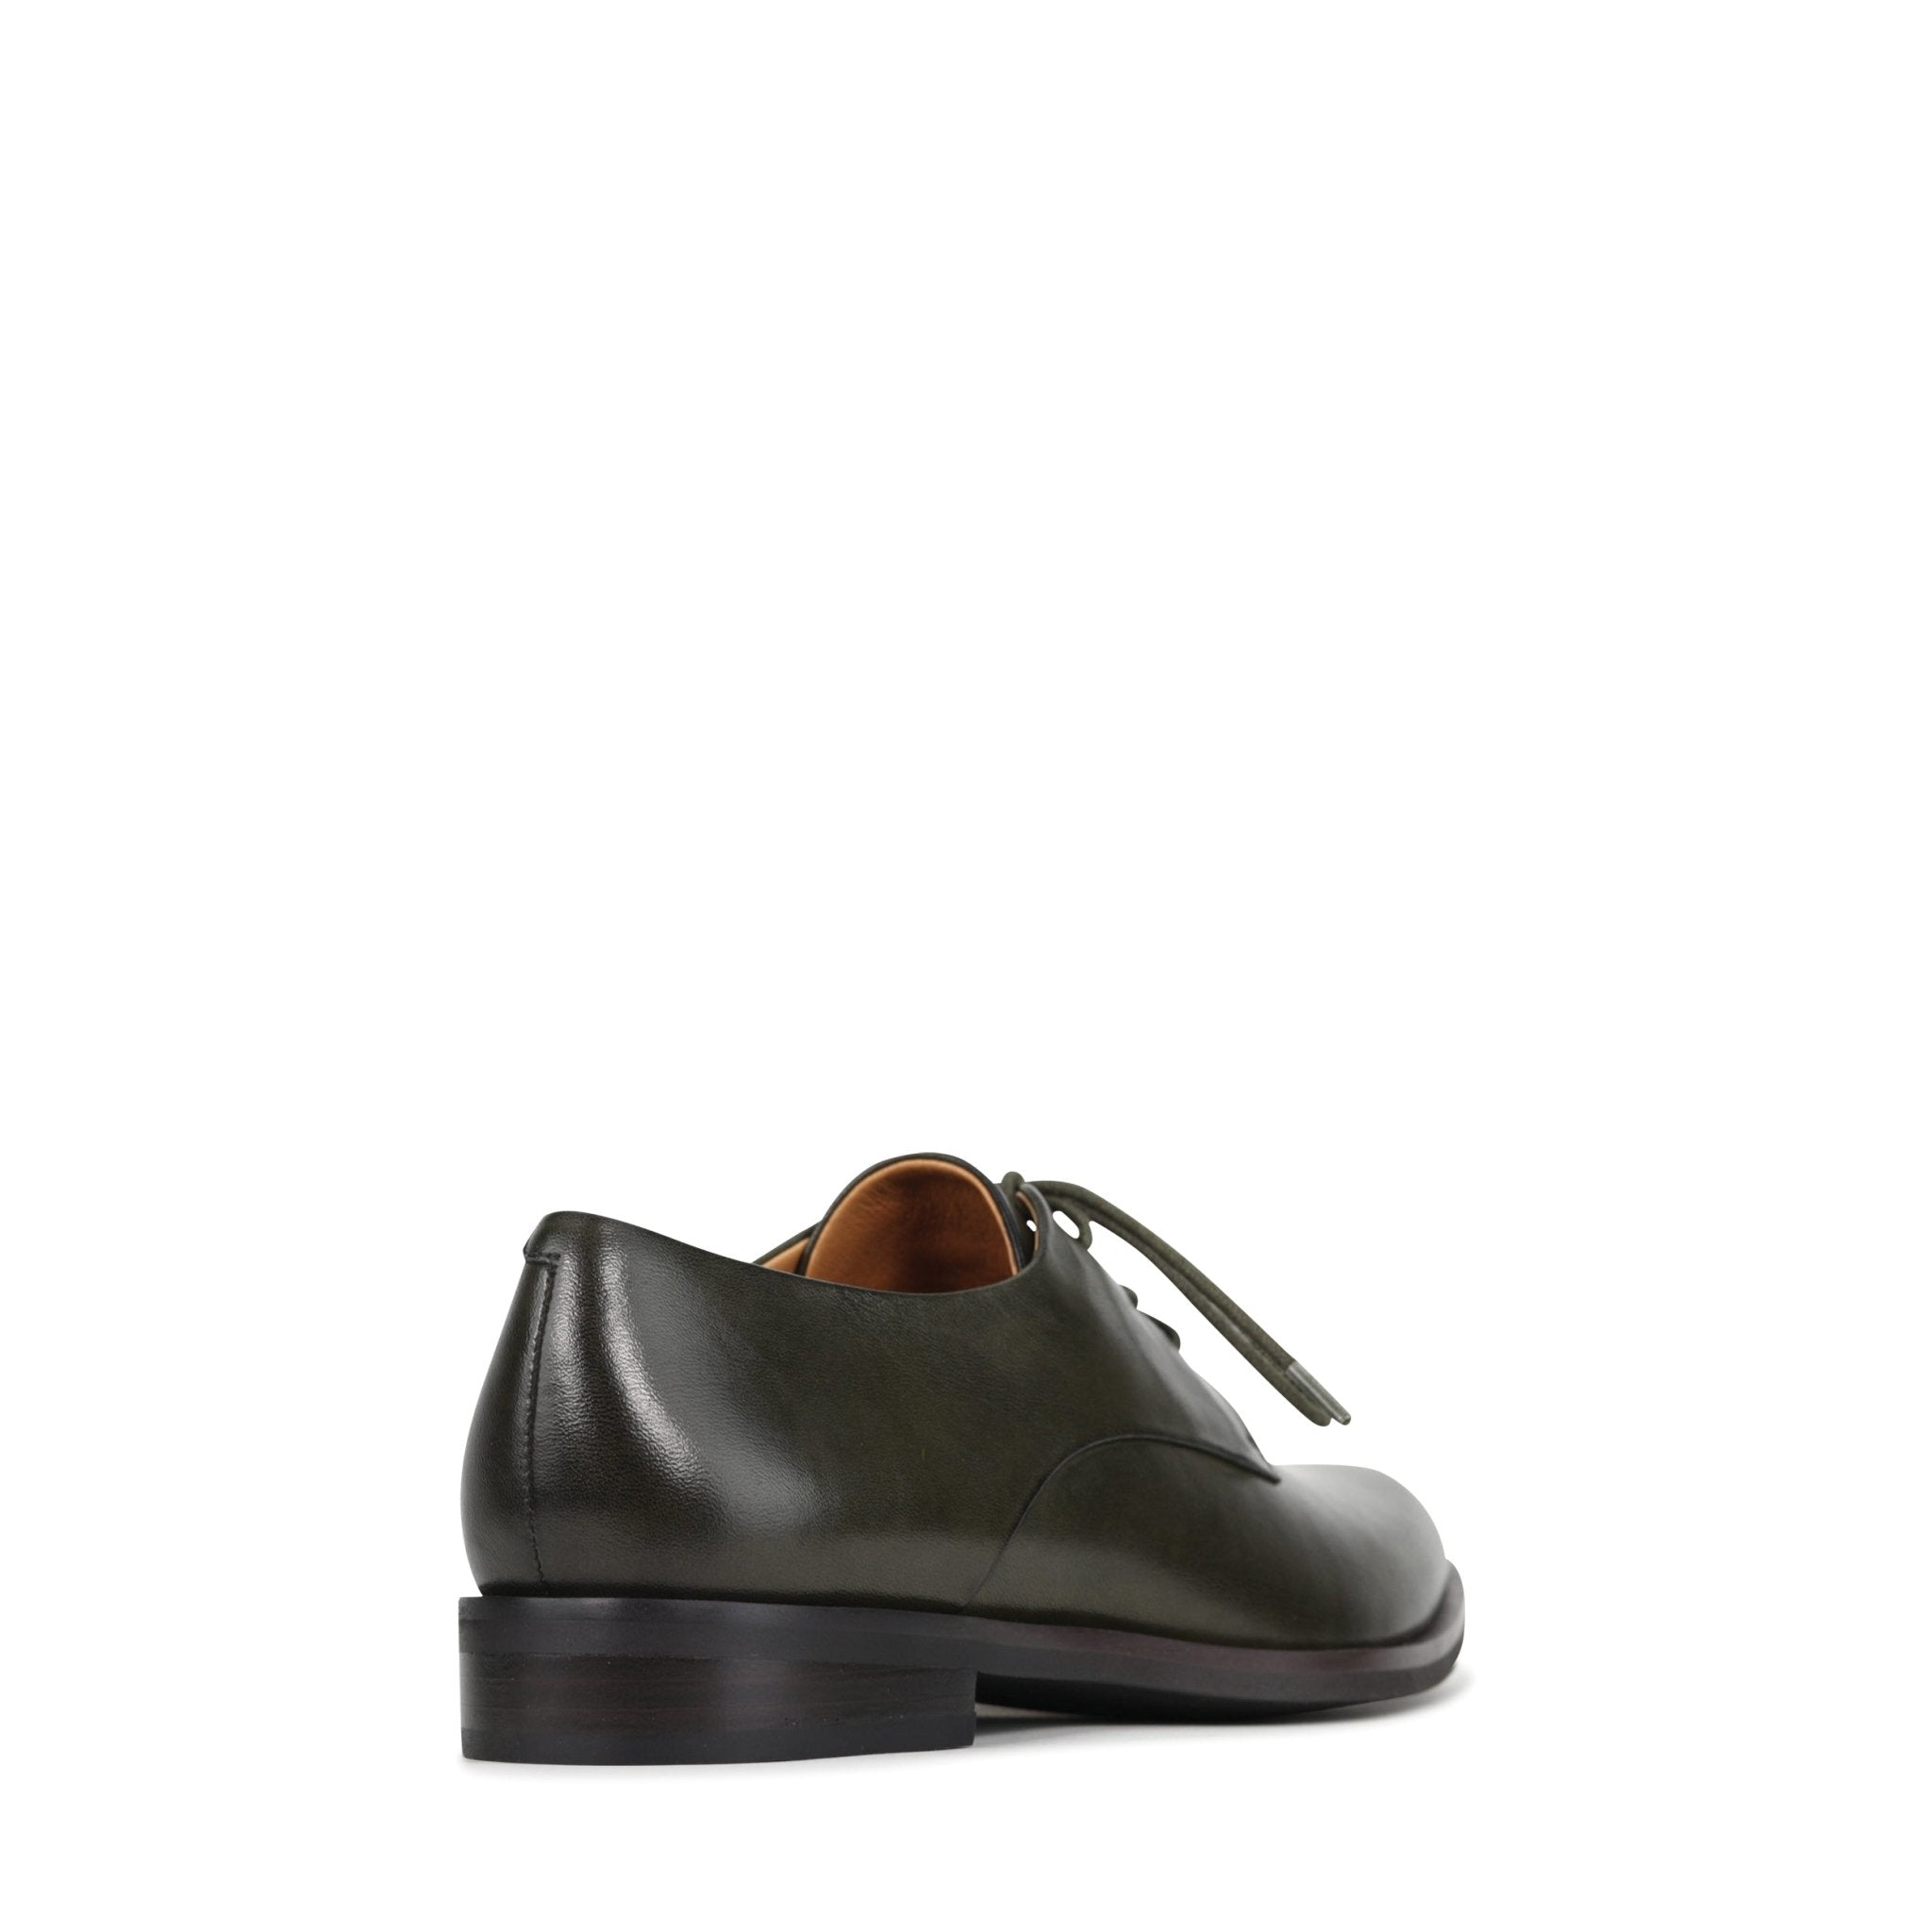 ZAIYA - EOS Footwear - #color_Dark/olive